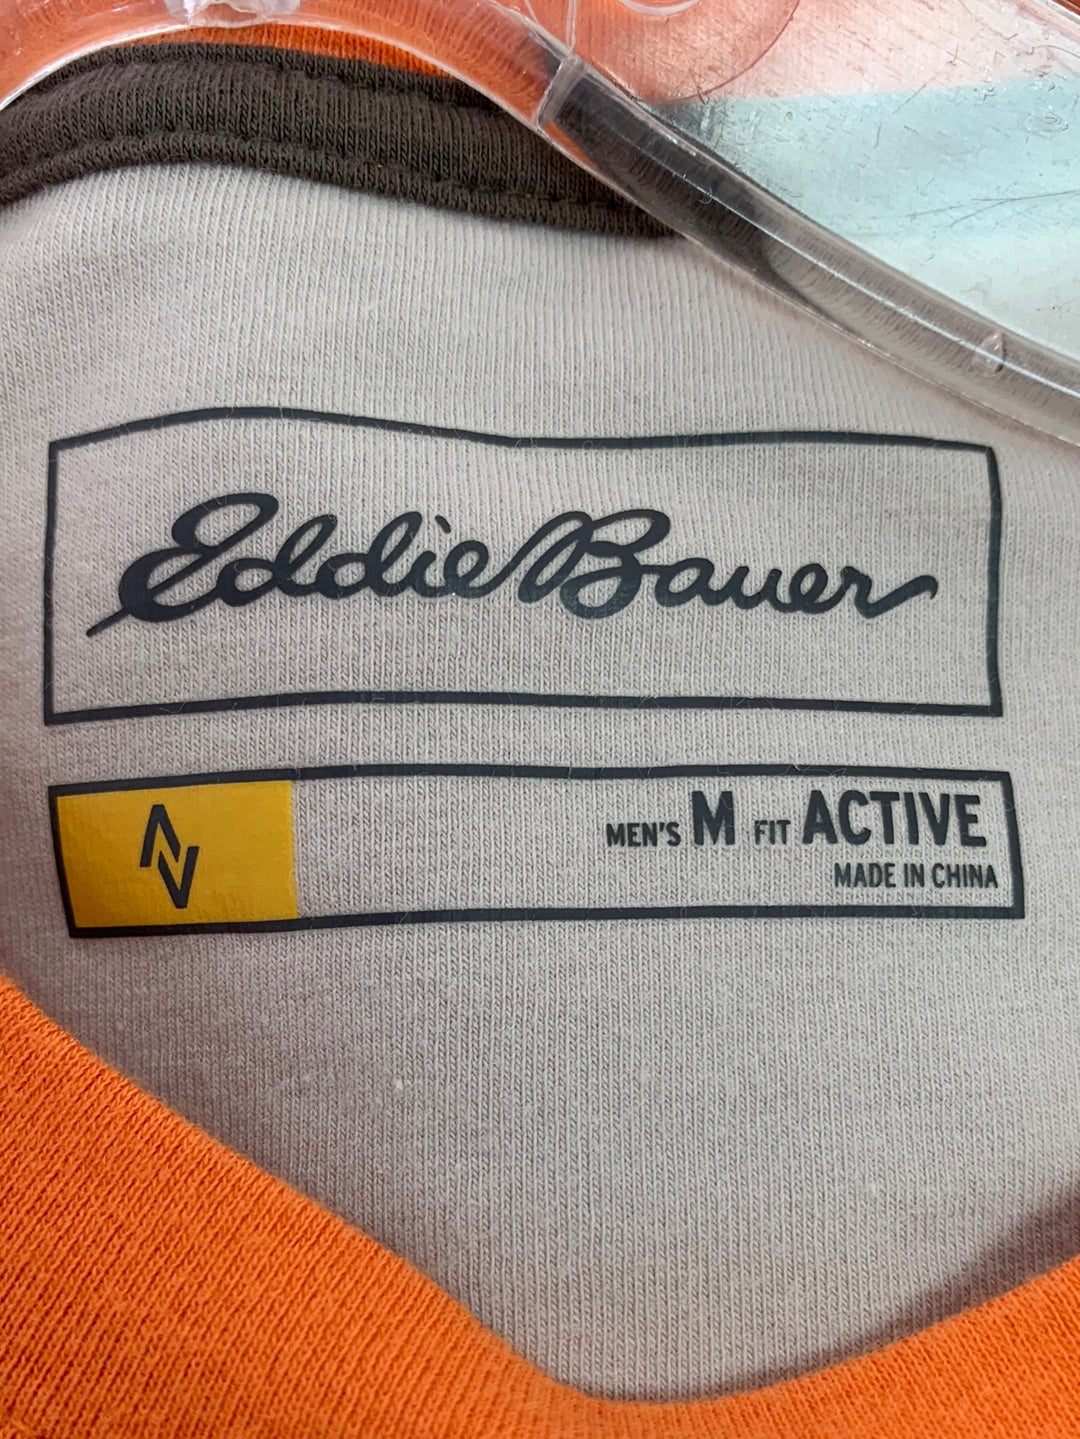 NWT - EDDIE BAUER orange Free Dry Travex Active Short Sleeve Shirt - M